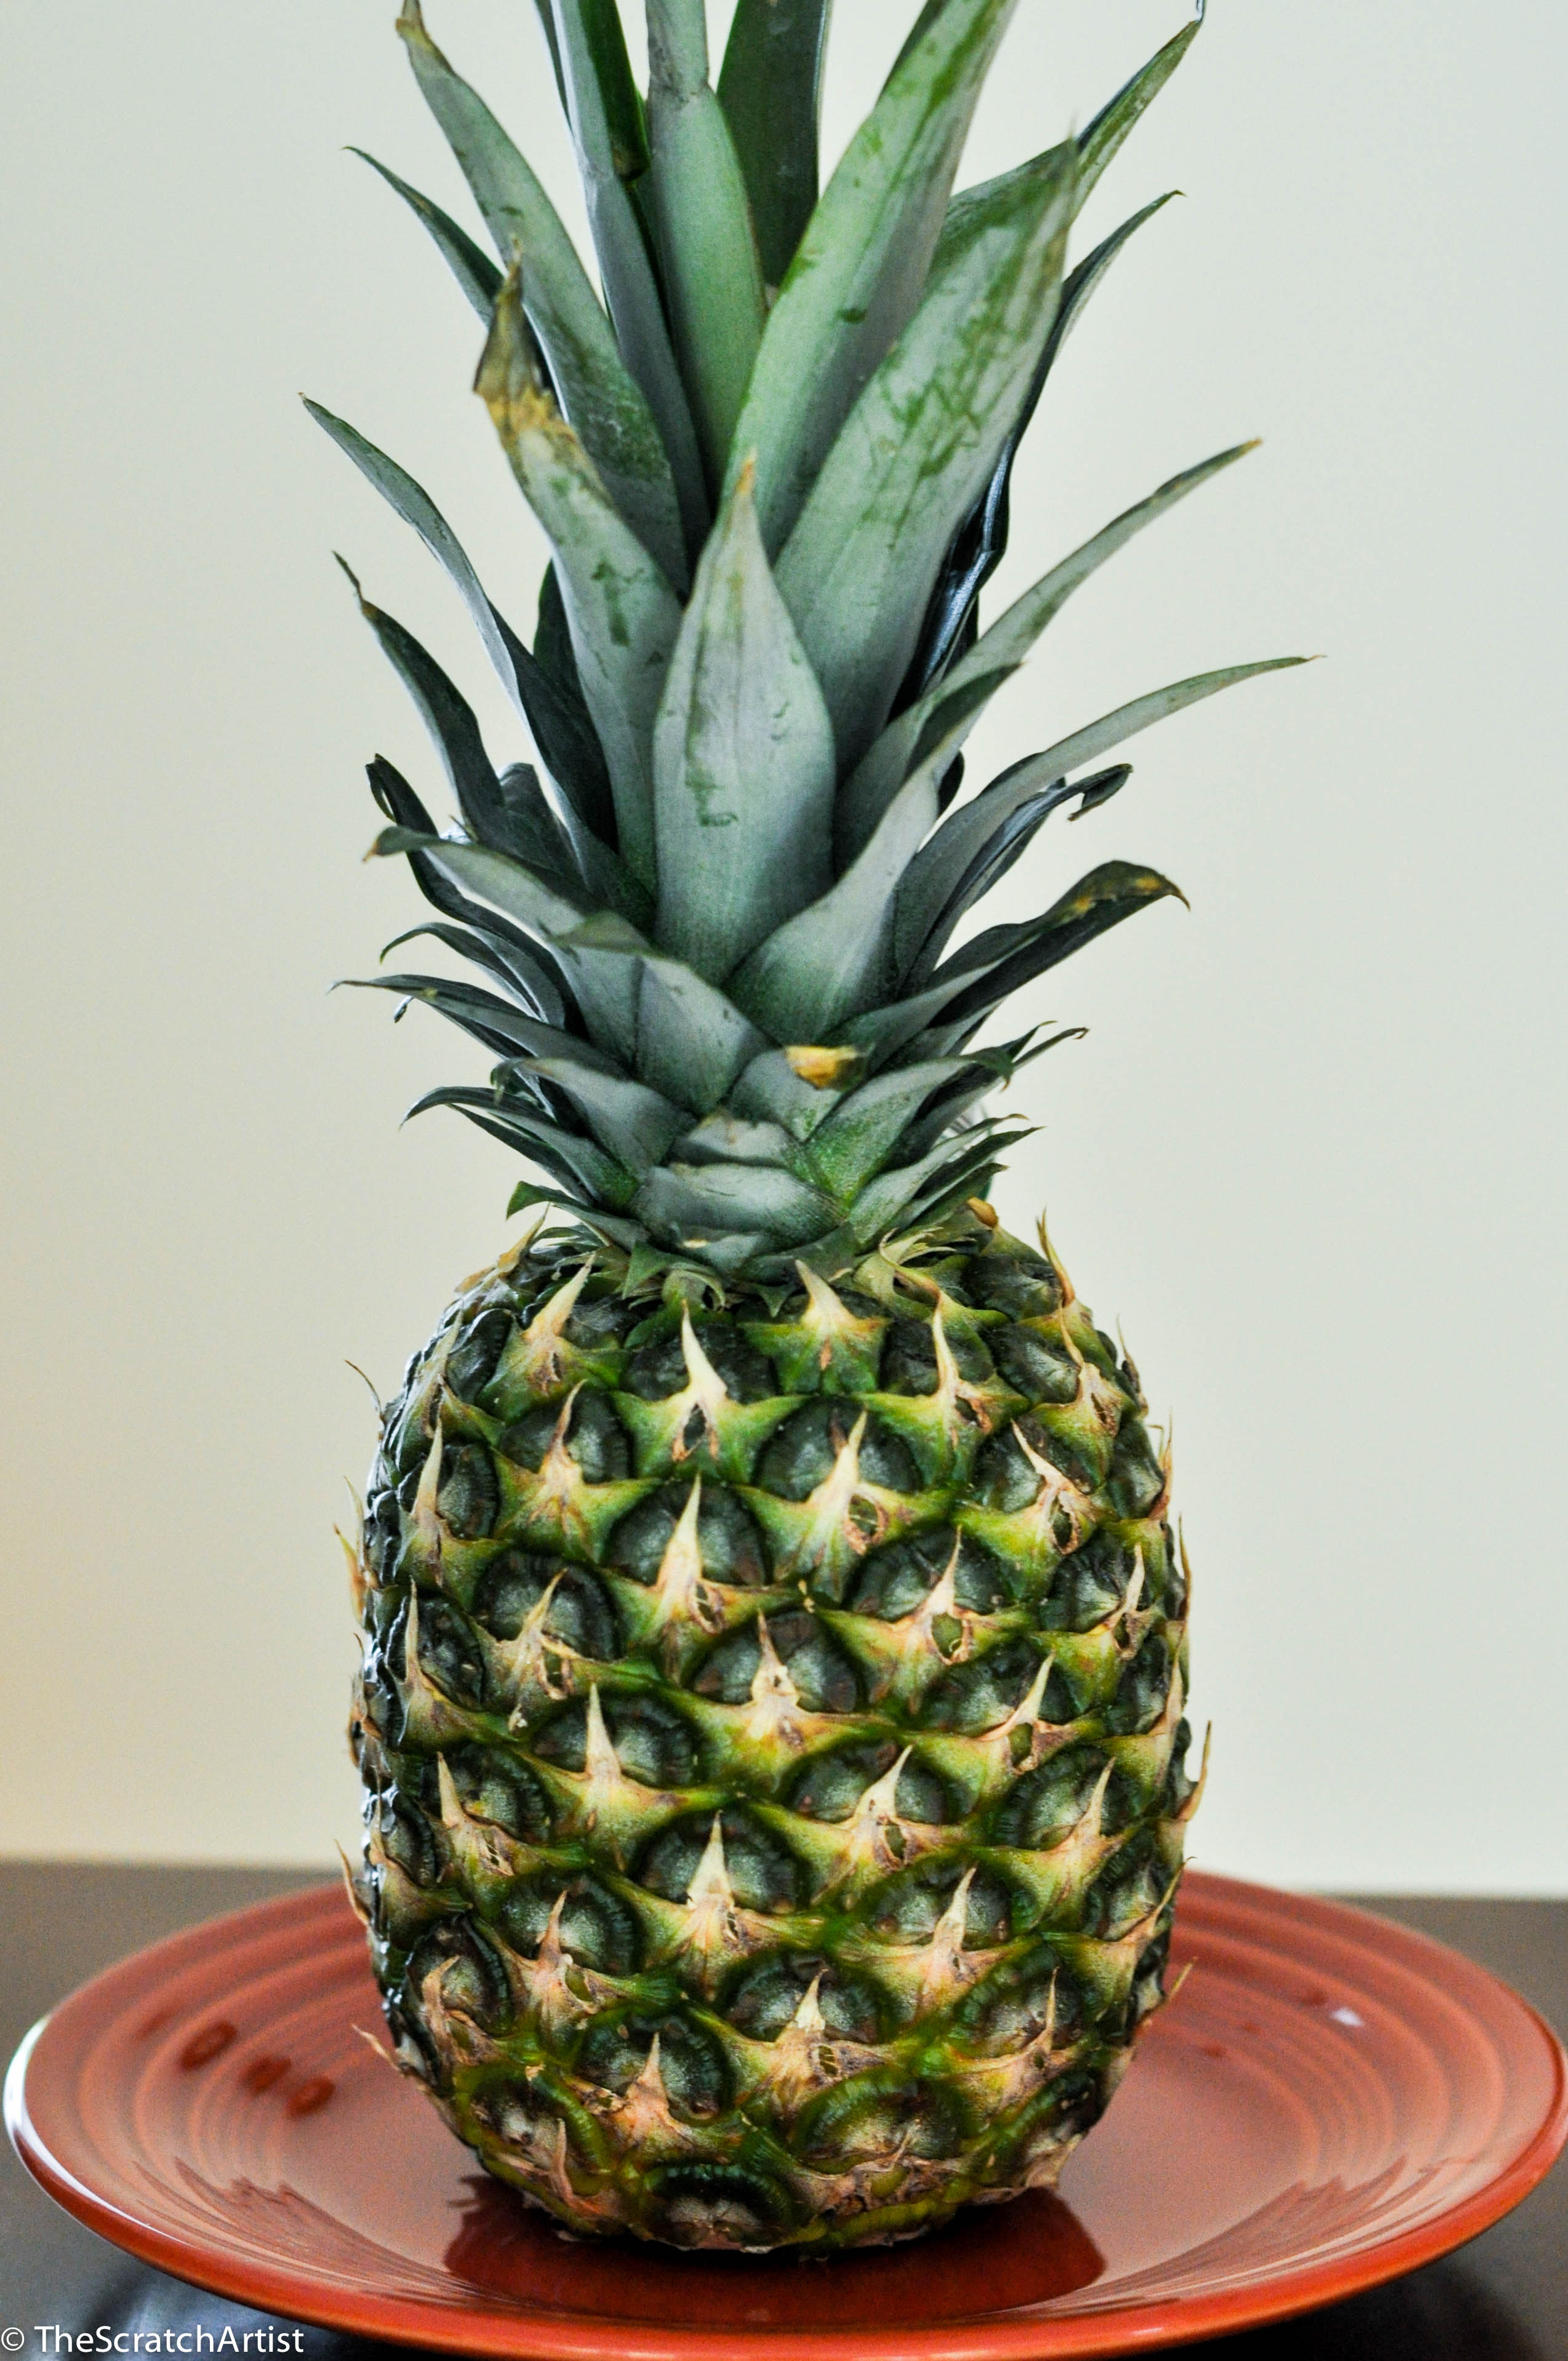 How to Cut a Pineapple & The Creativity Myth